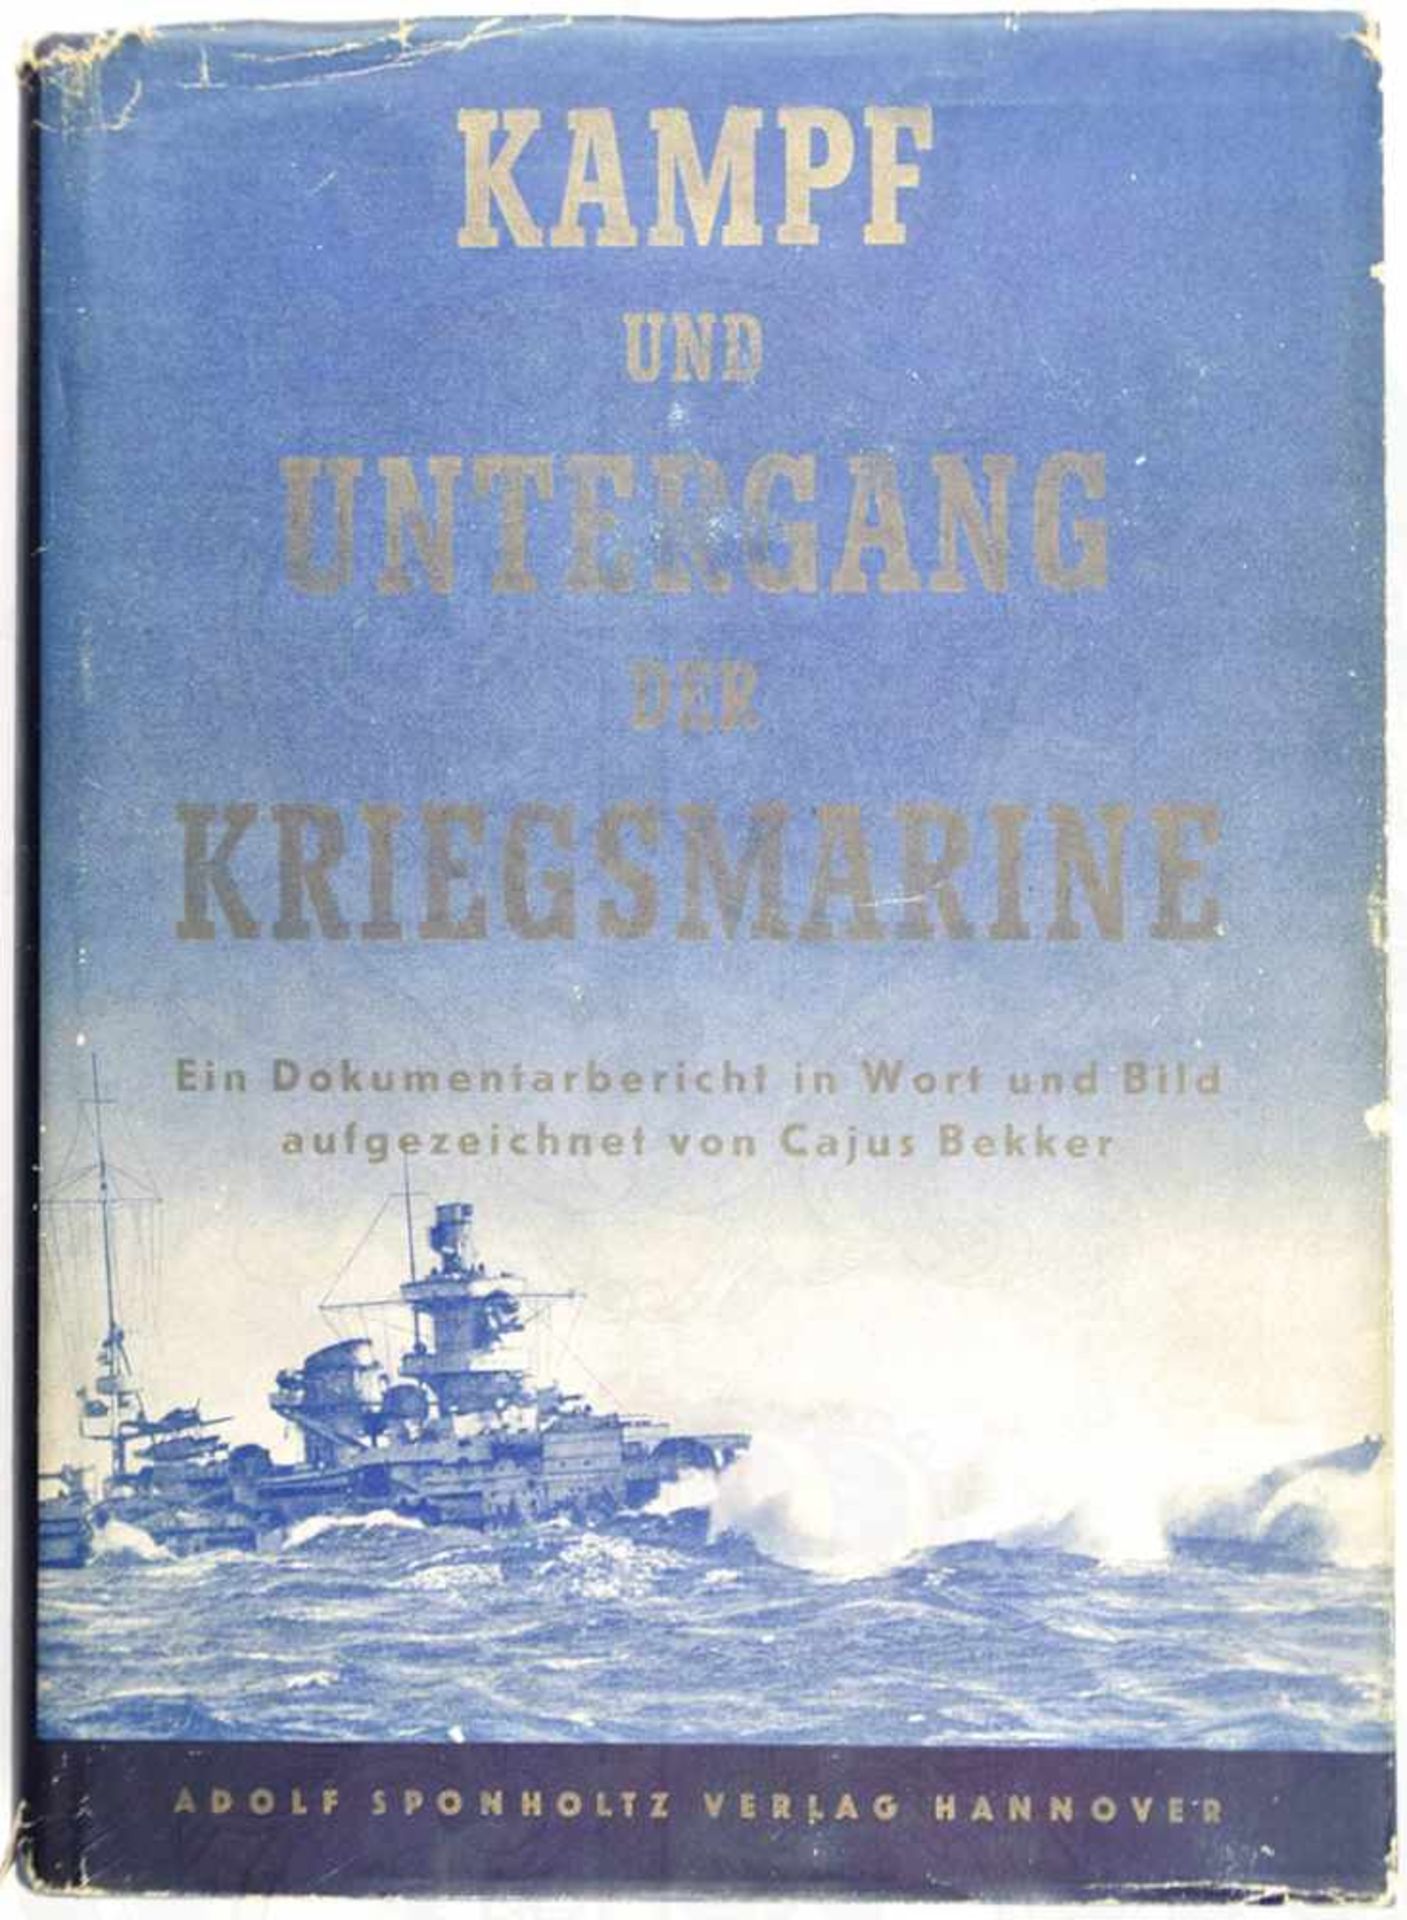 KAMPF UND UNTERGANG DER KRIEGSMARINE, „Ein Dokumentarbericht in Wort und Bild“, 1953, 278 S.,